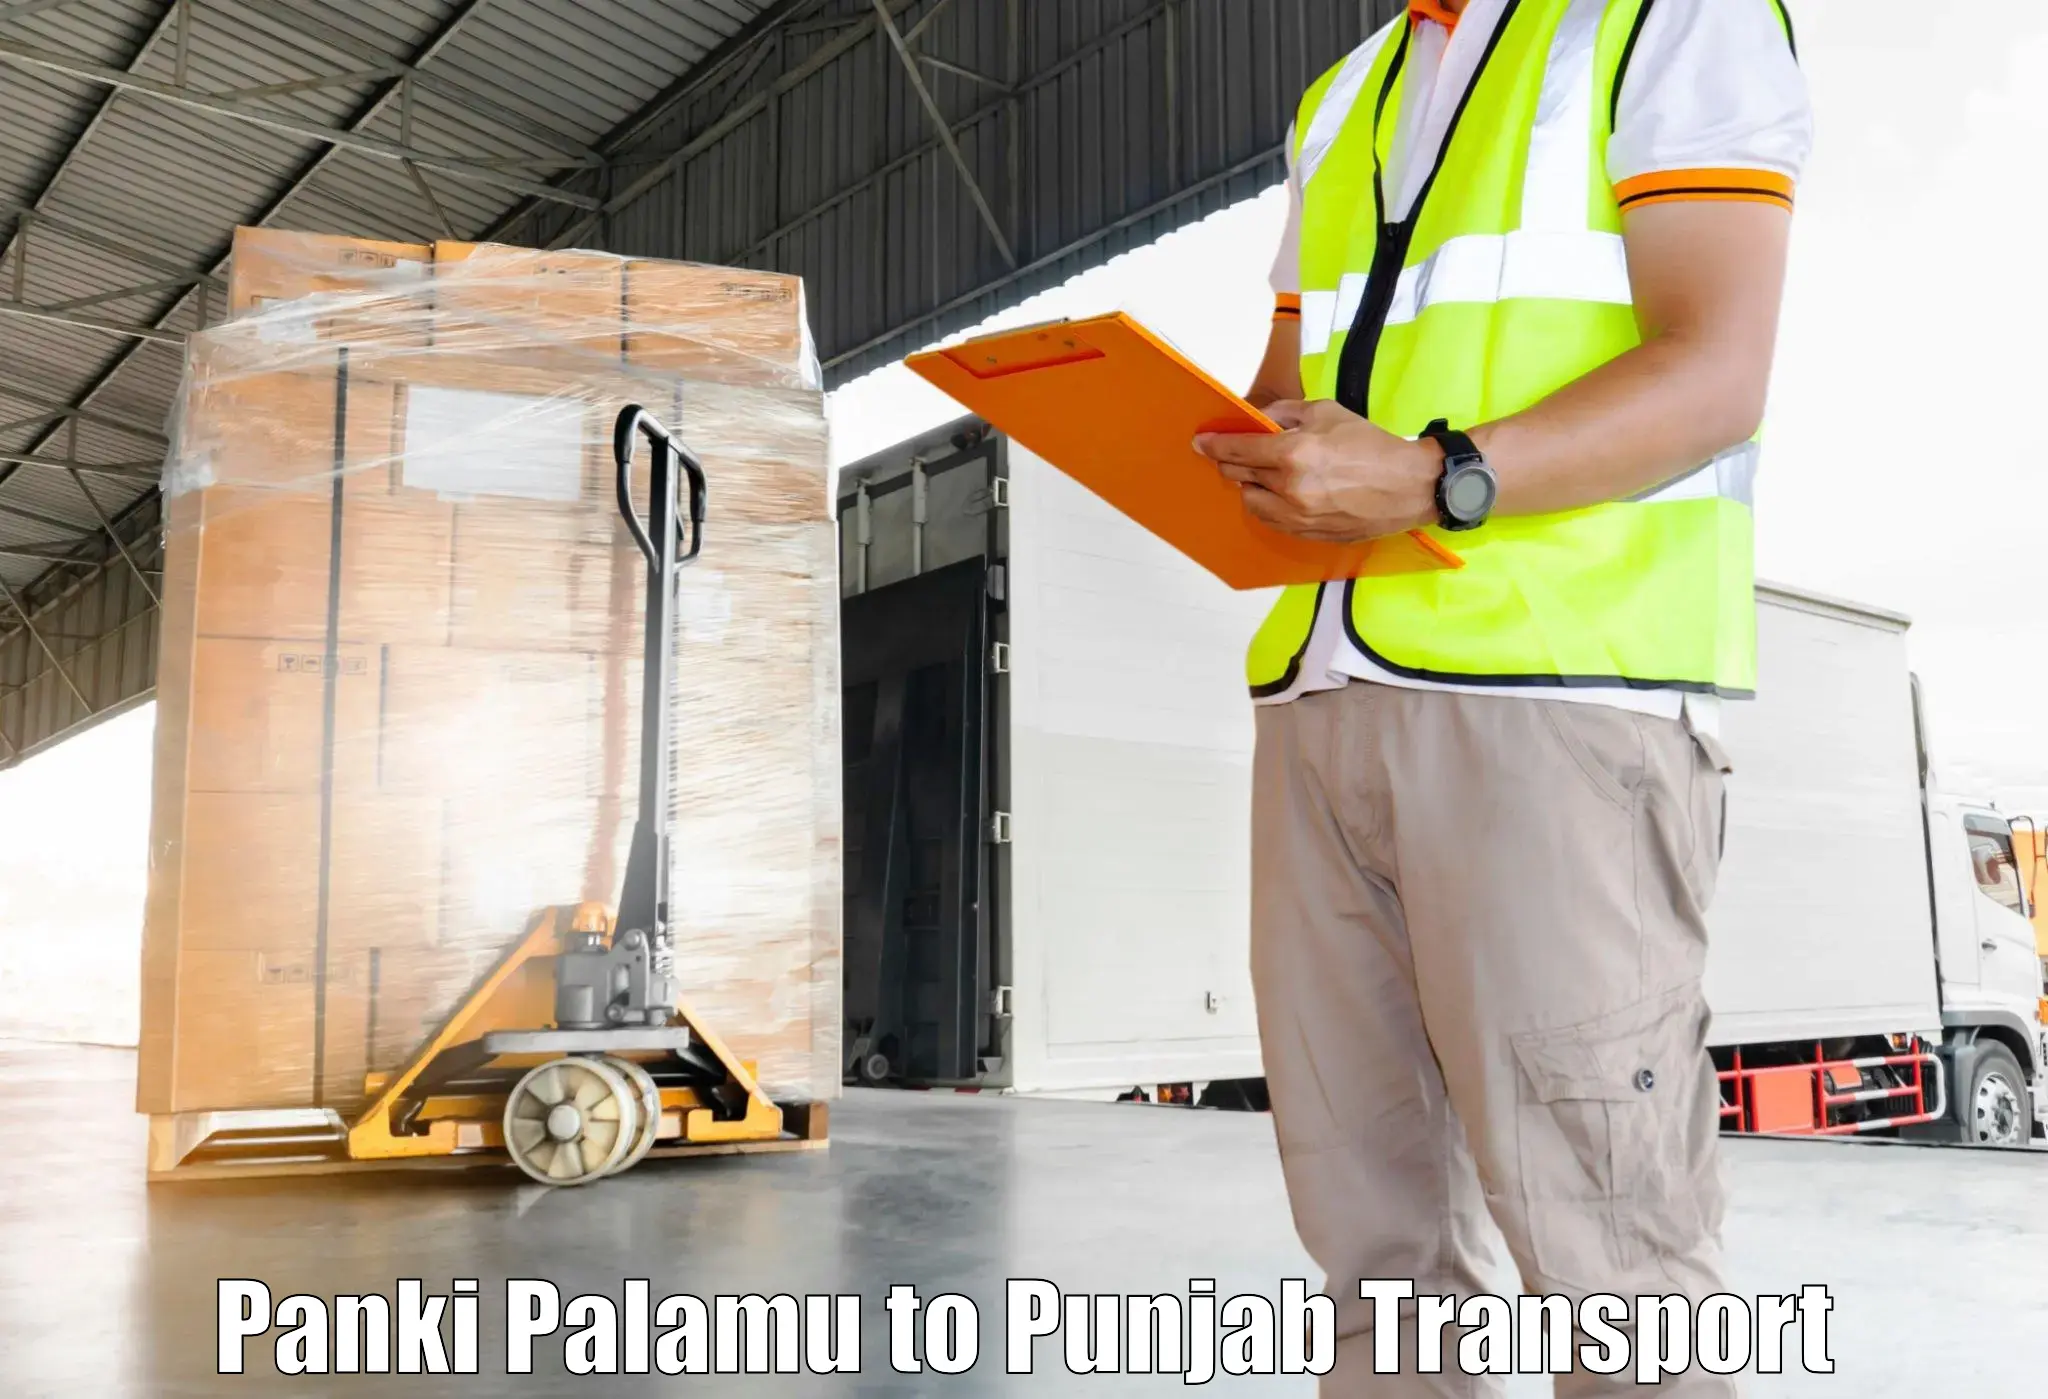 Furniture transport service Panki Palamu to Punjab